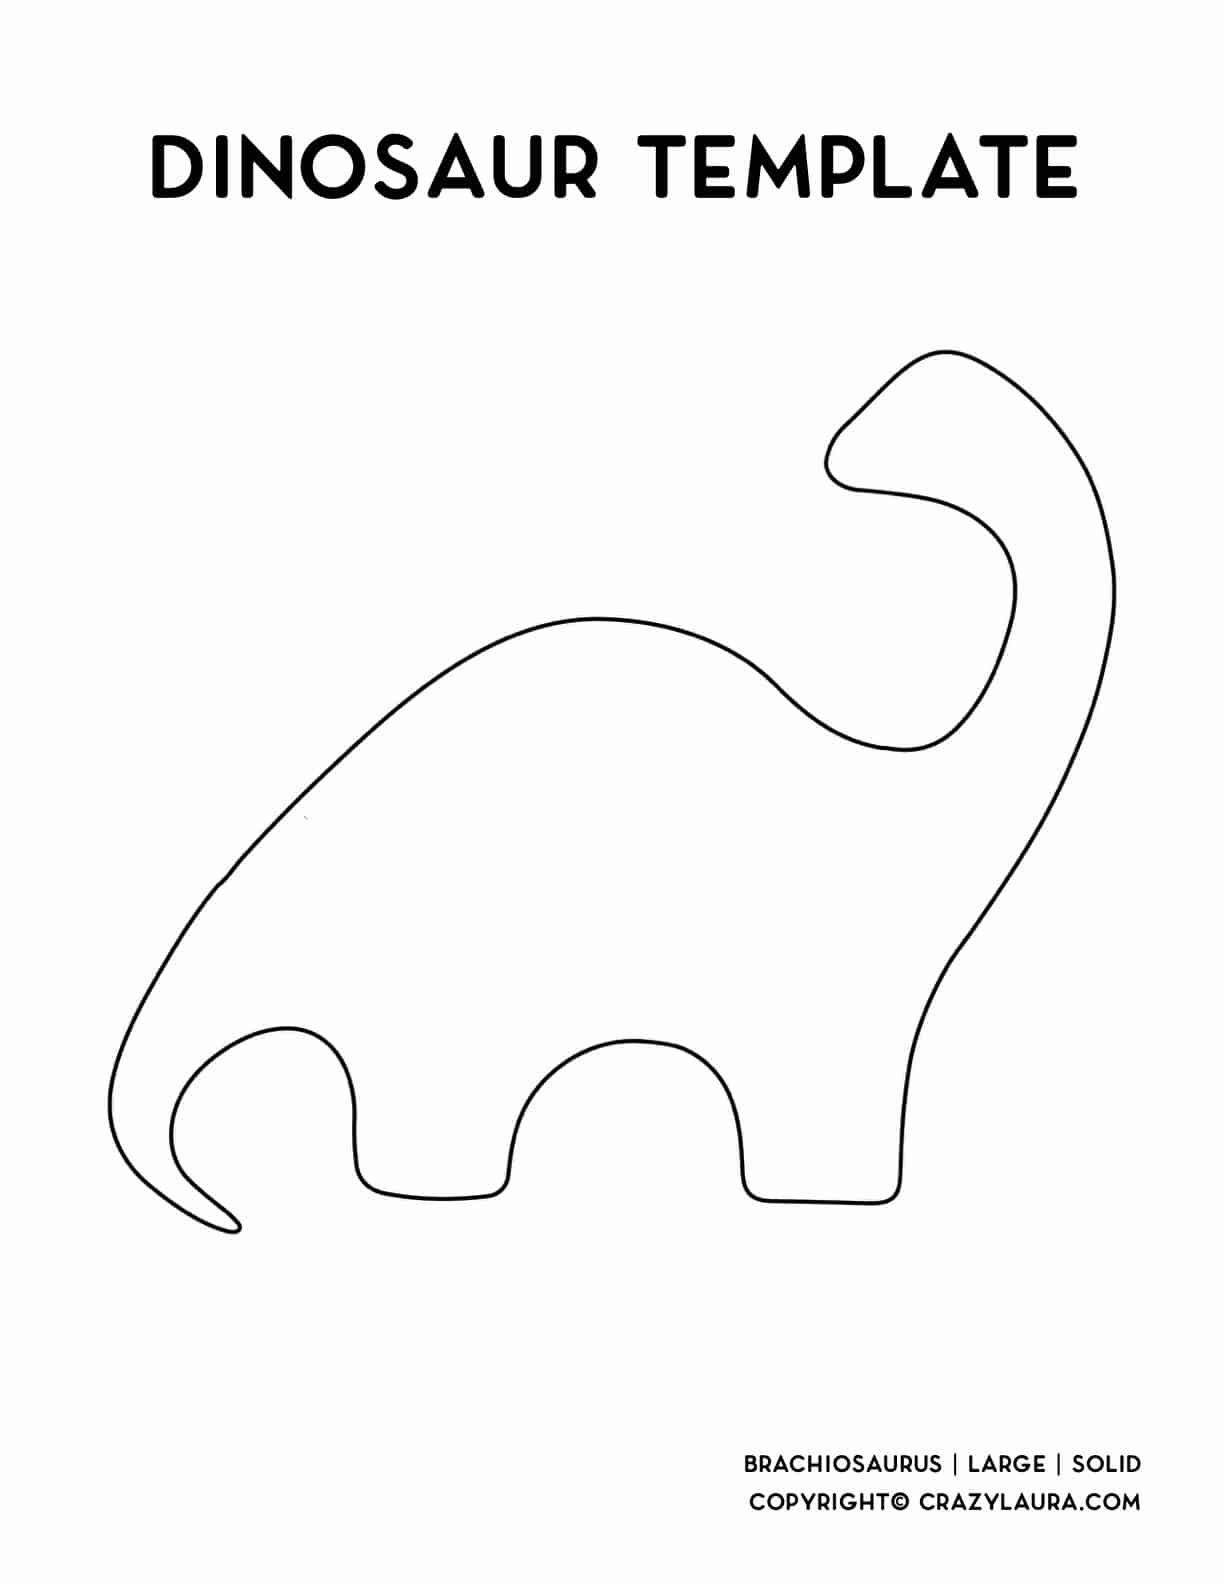 large dinosoar outline to print for crafts